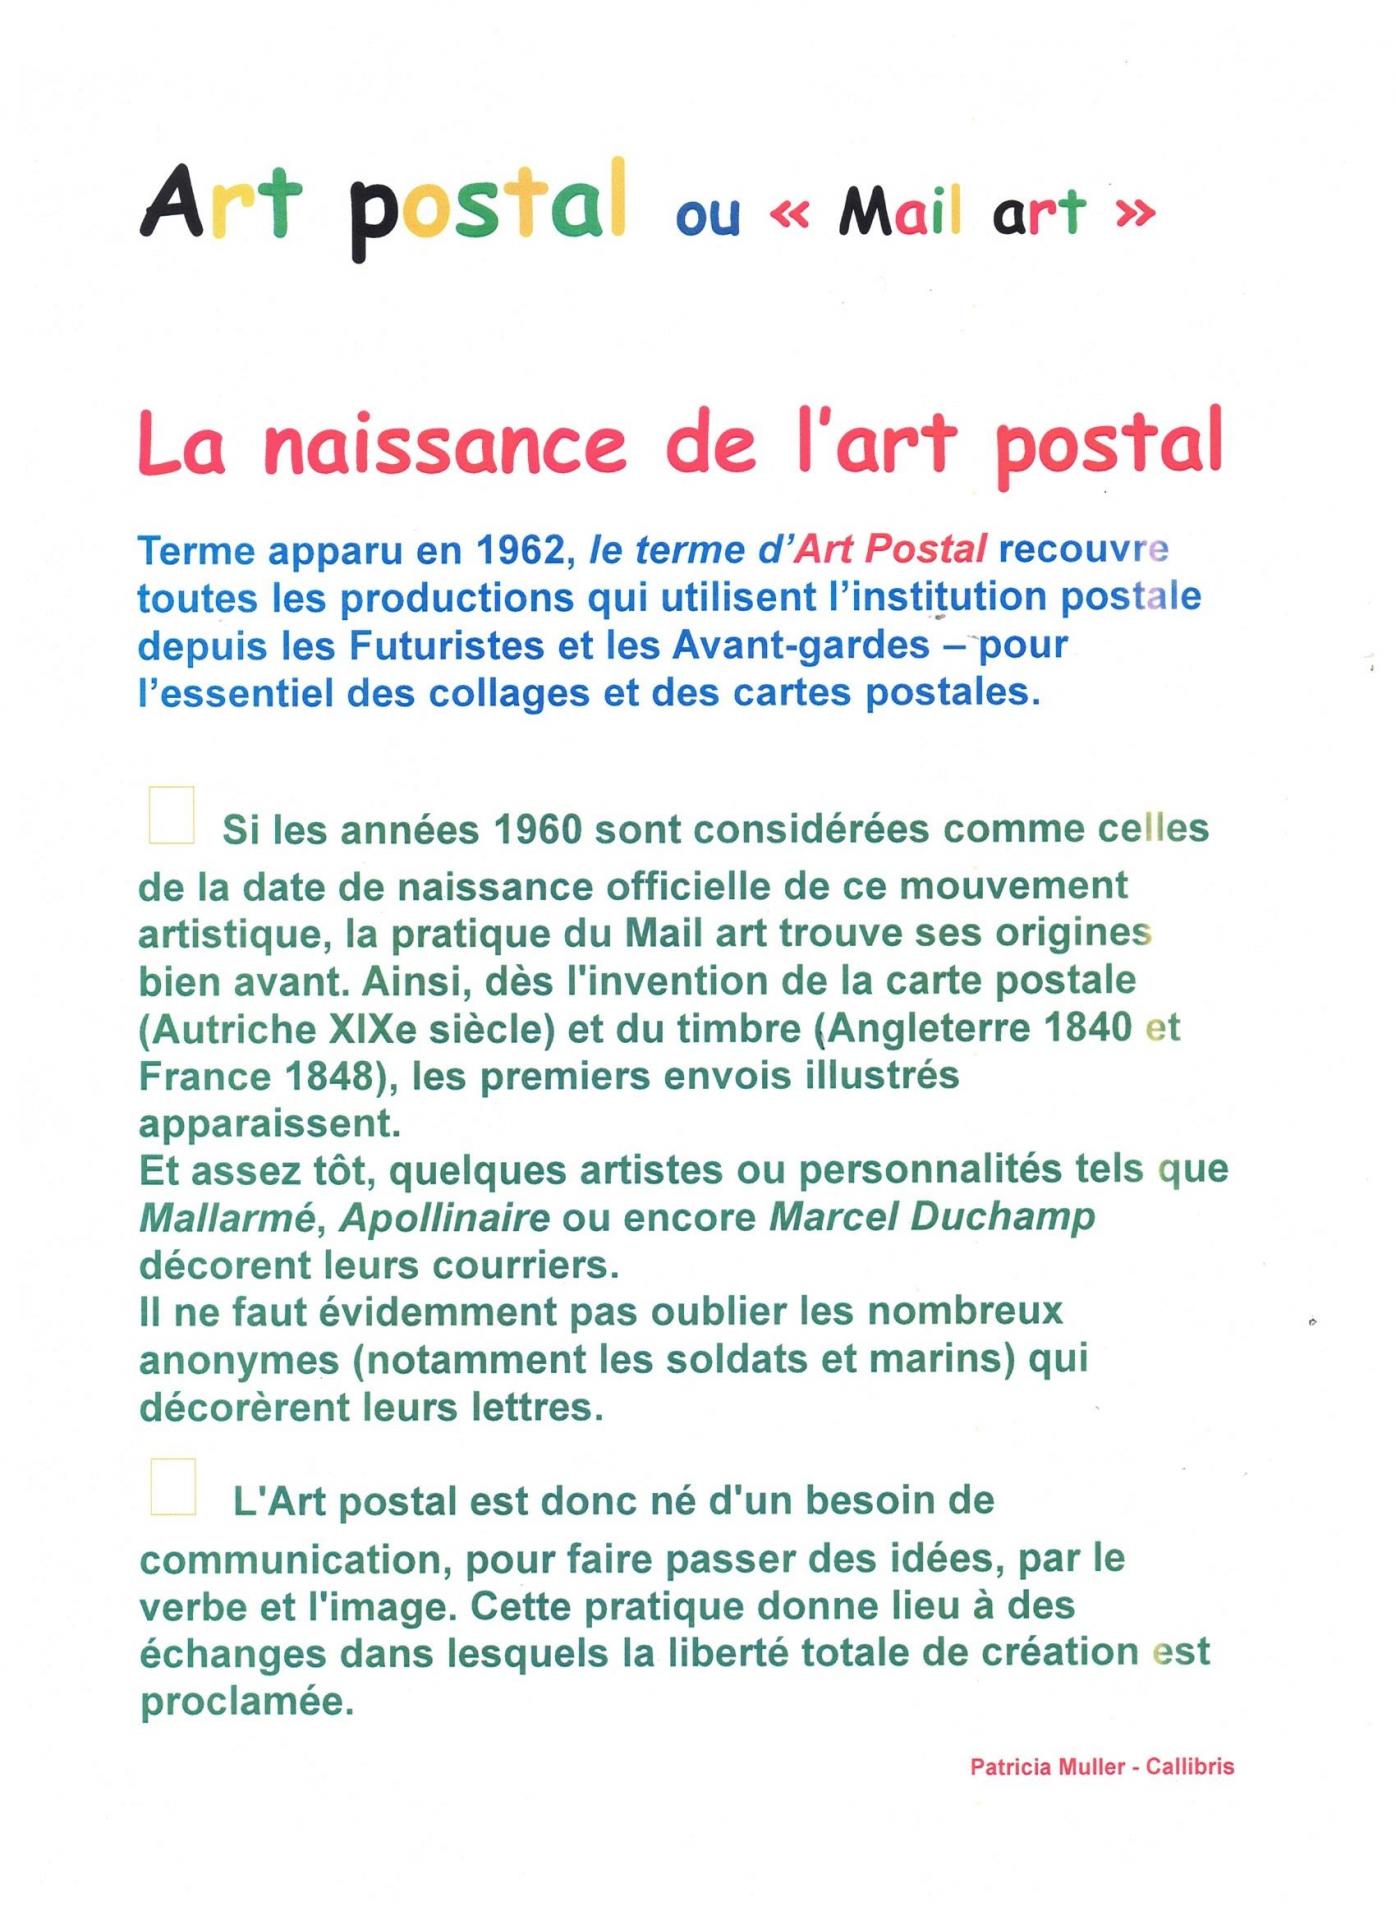 Art postal texte